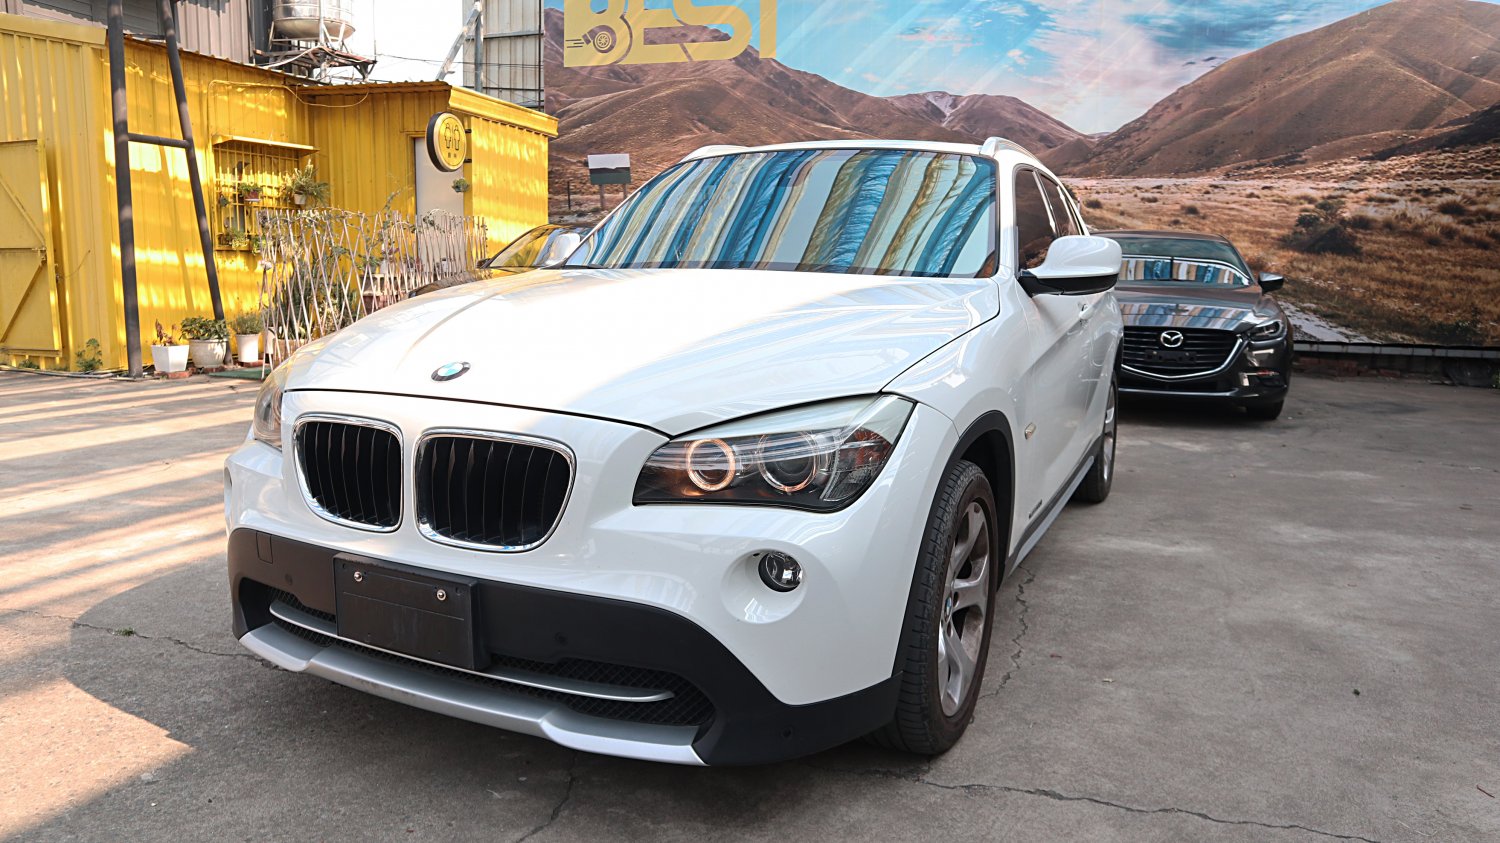 Bmw 寶馬 ／ X1 ／ 2012年 ／ 2012年 BMW X1 白色 寶馬中古車 ／ 高拍